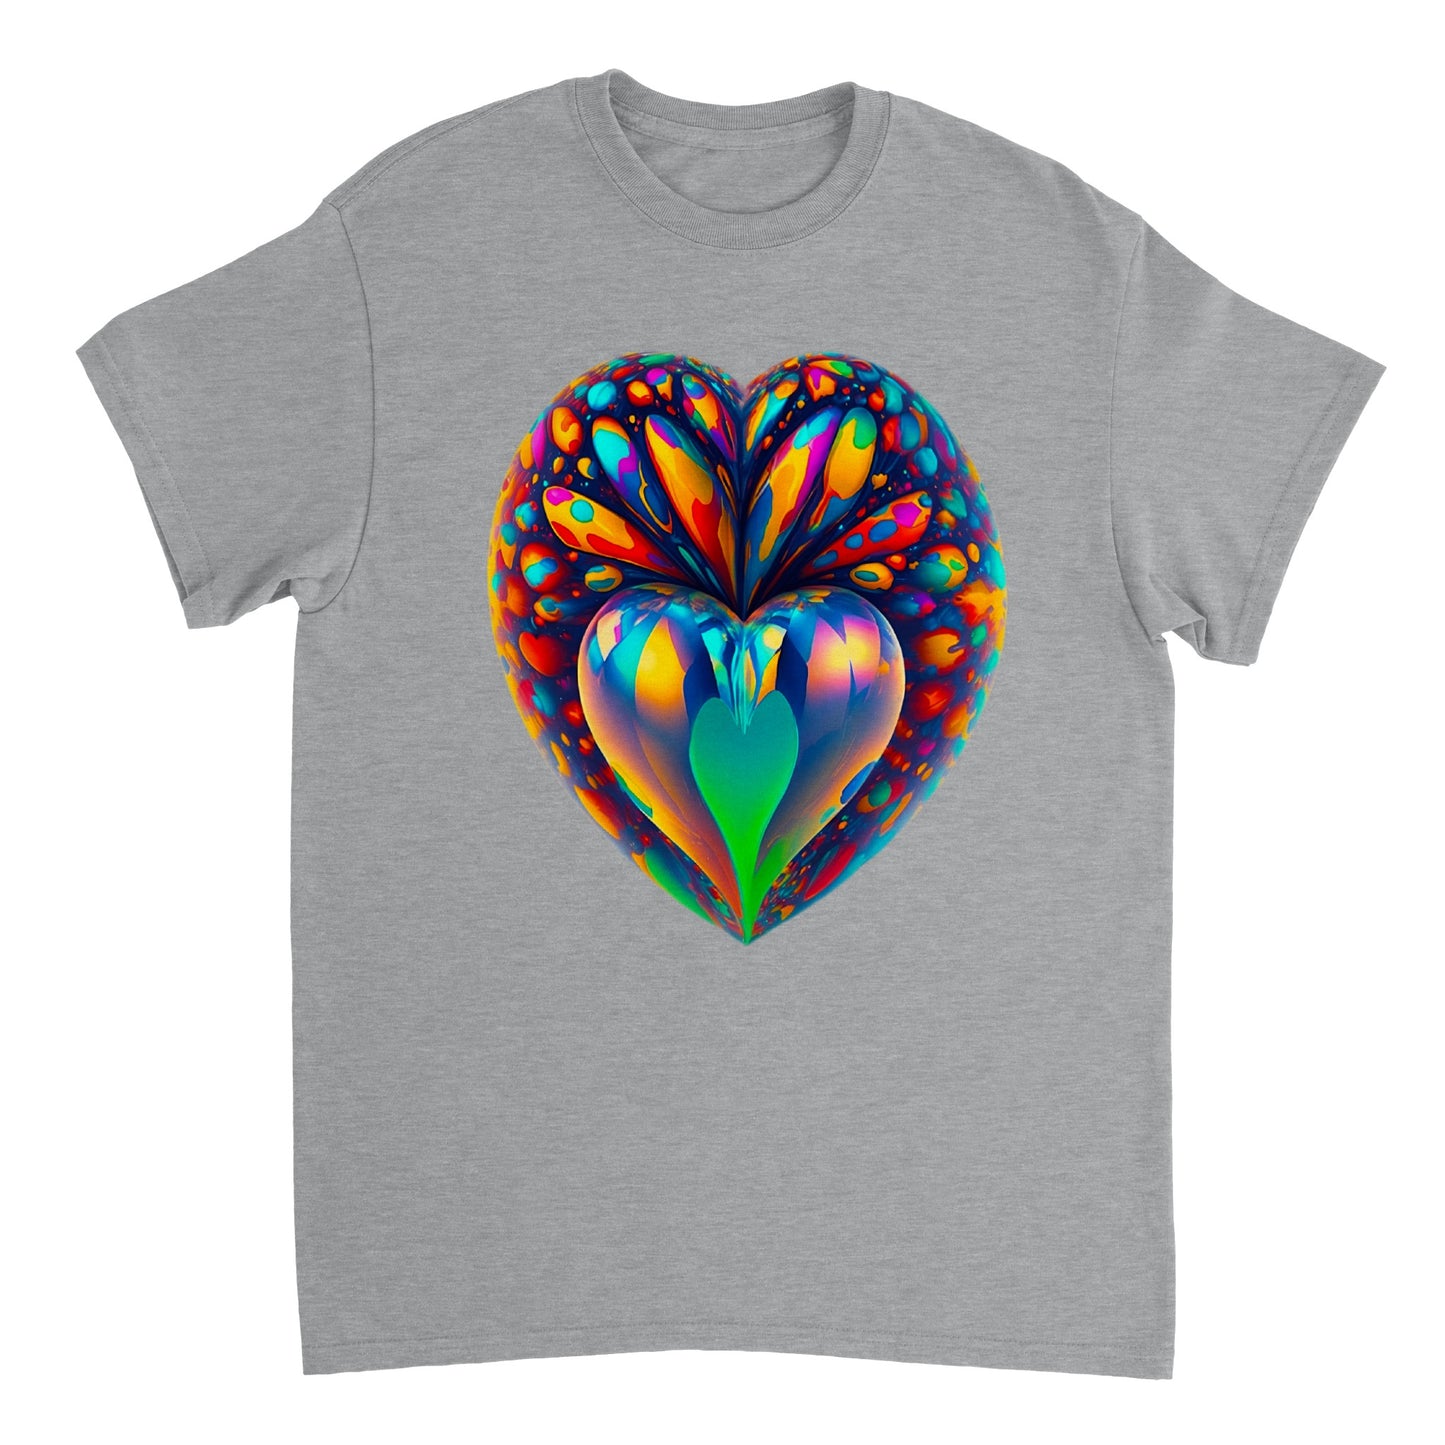 Love Heart - Heavyweight Unisex Crewneck T-shirt 91